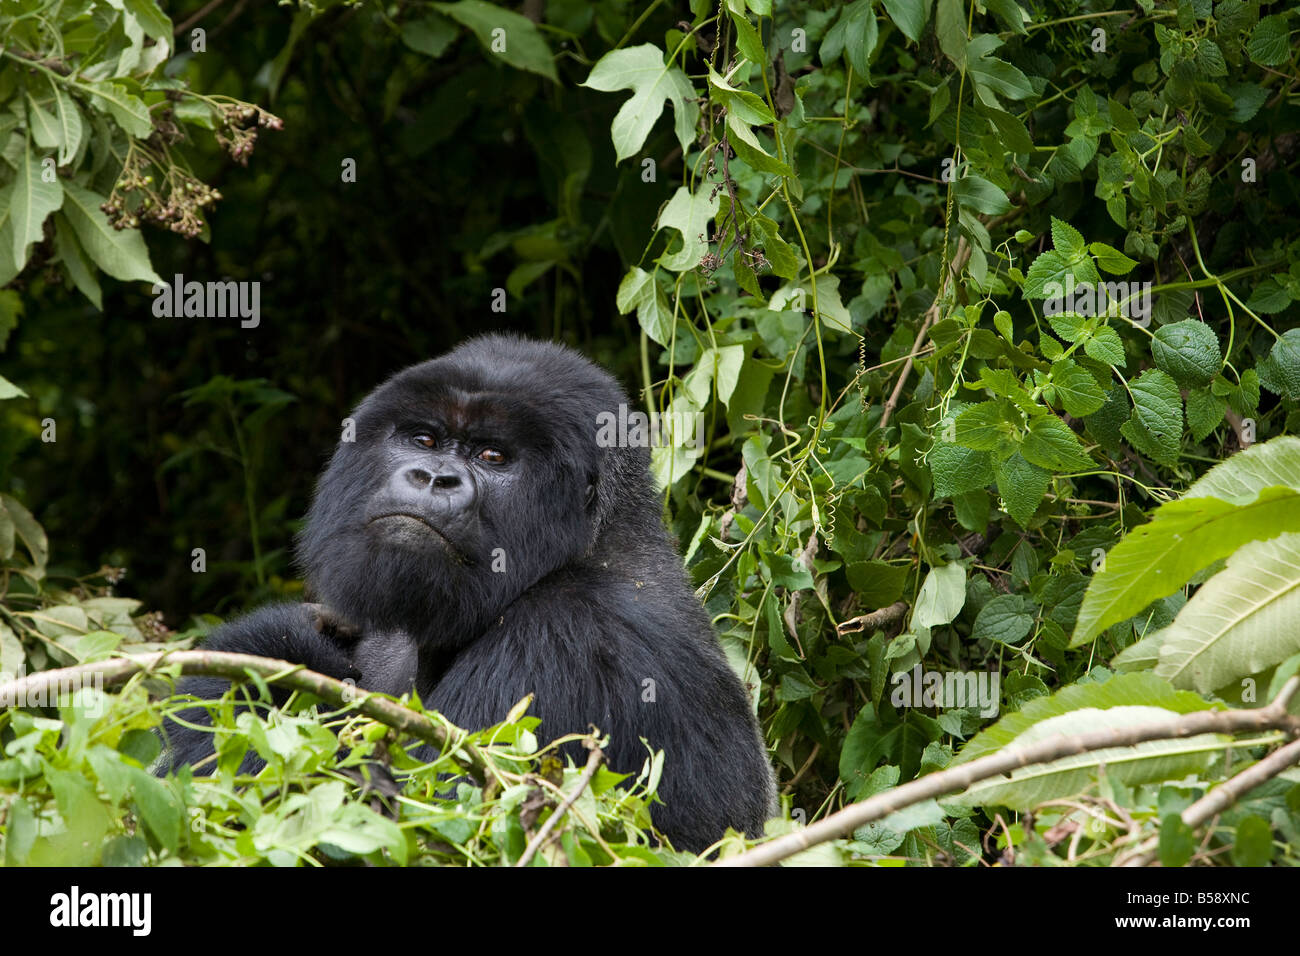 Silverback, Mountain gorilla (Gorilla gorilla beringei), Rwanda (Congo border), Africa Stock Photo